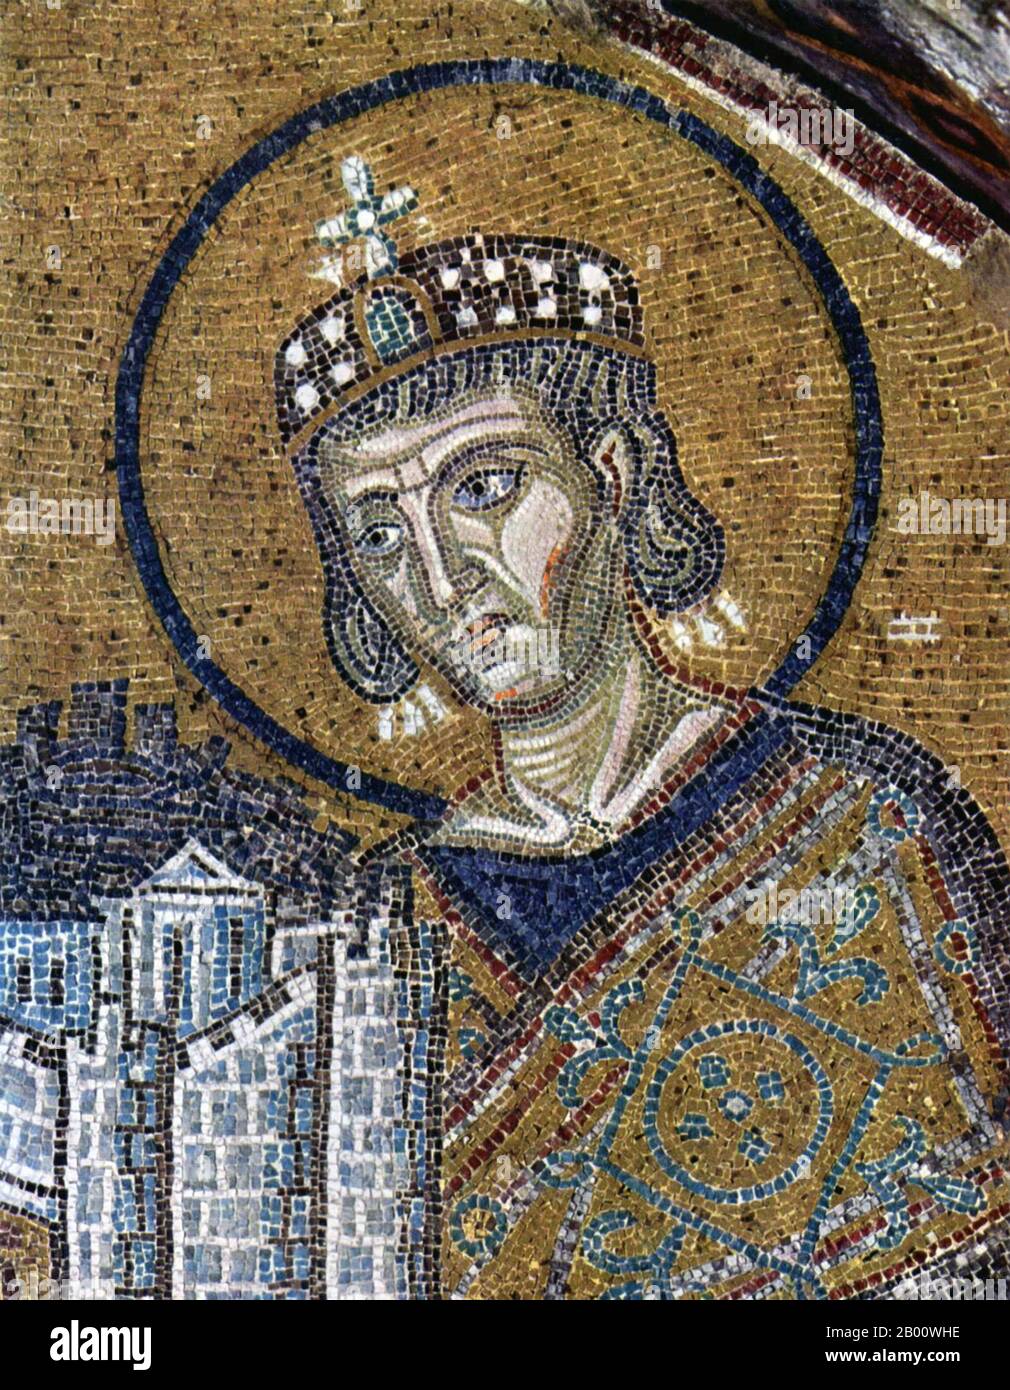 Turquie : Empereur Constantine I avec un modèle de la ville de Byzance. Détail d'une mosaïque dans la basilique Sainte-Sophie, c. 1000 CE. Banque D'Images